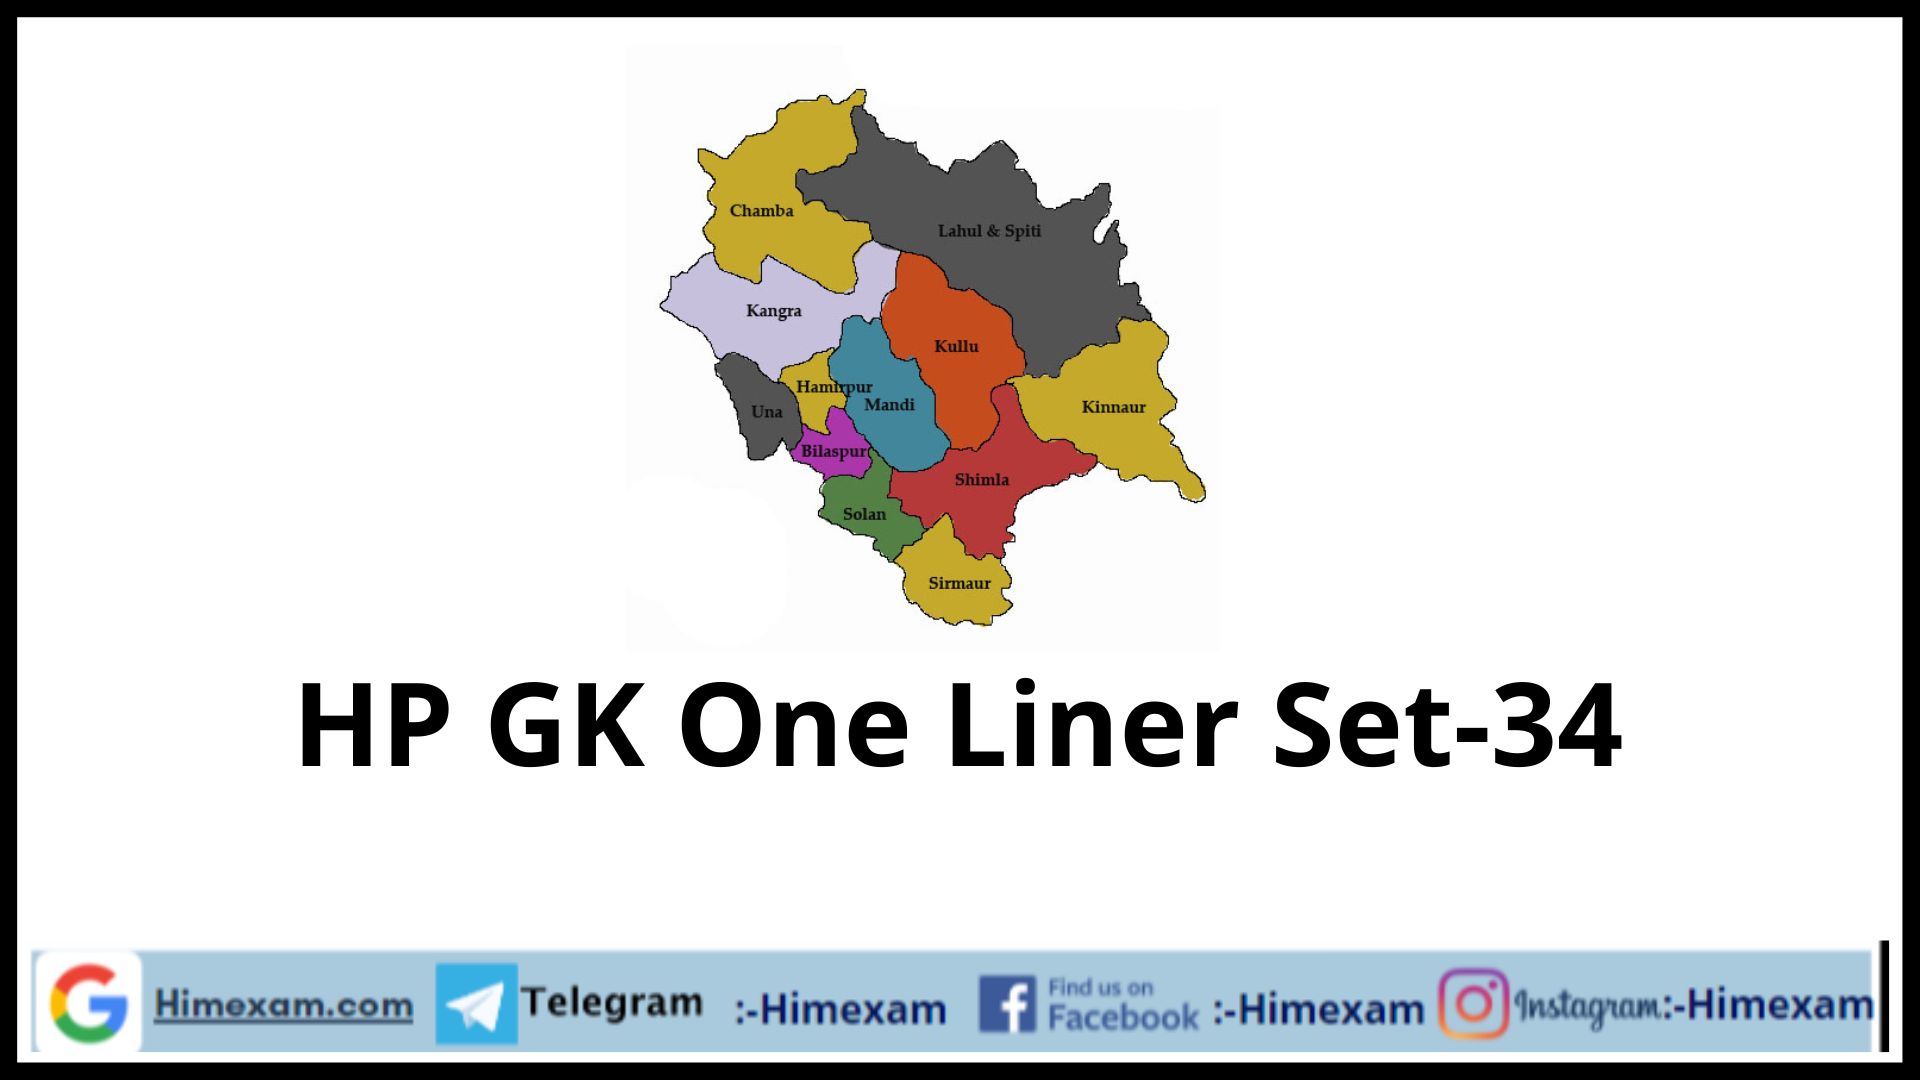 HP GK One Liner Set-34